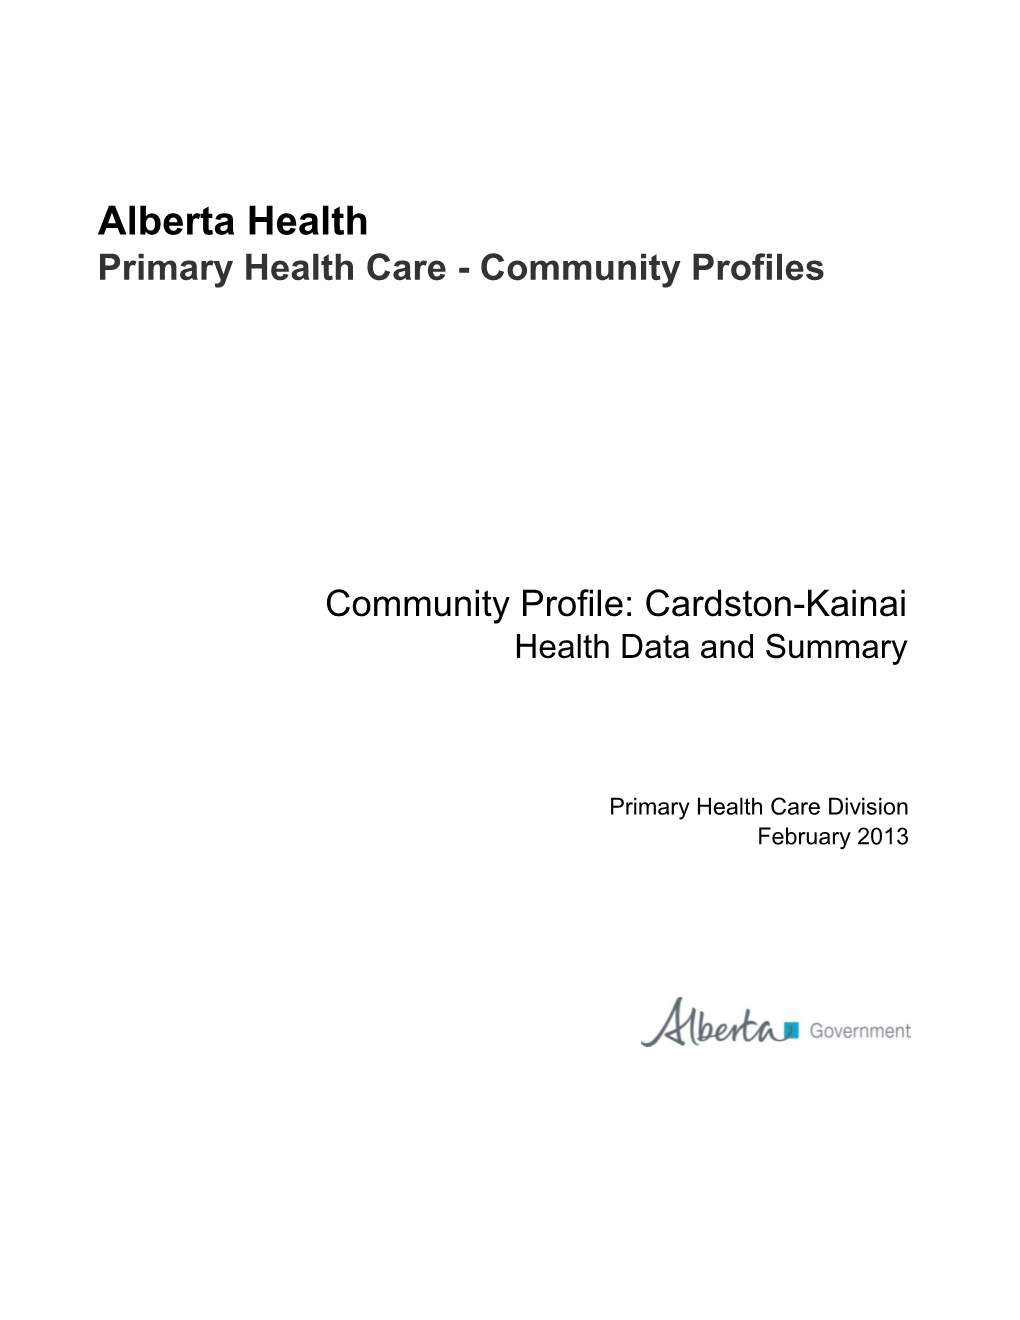 Primary Health Care Community Profile